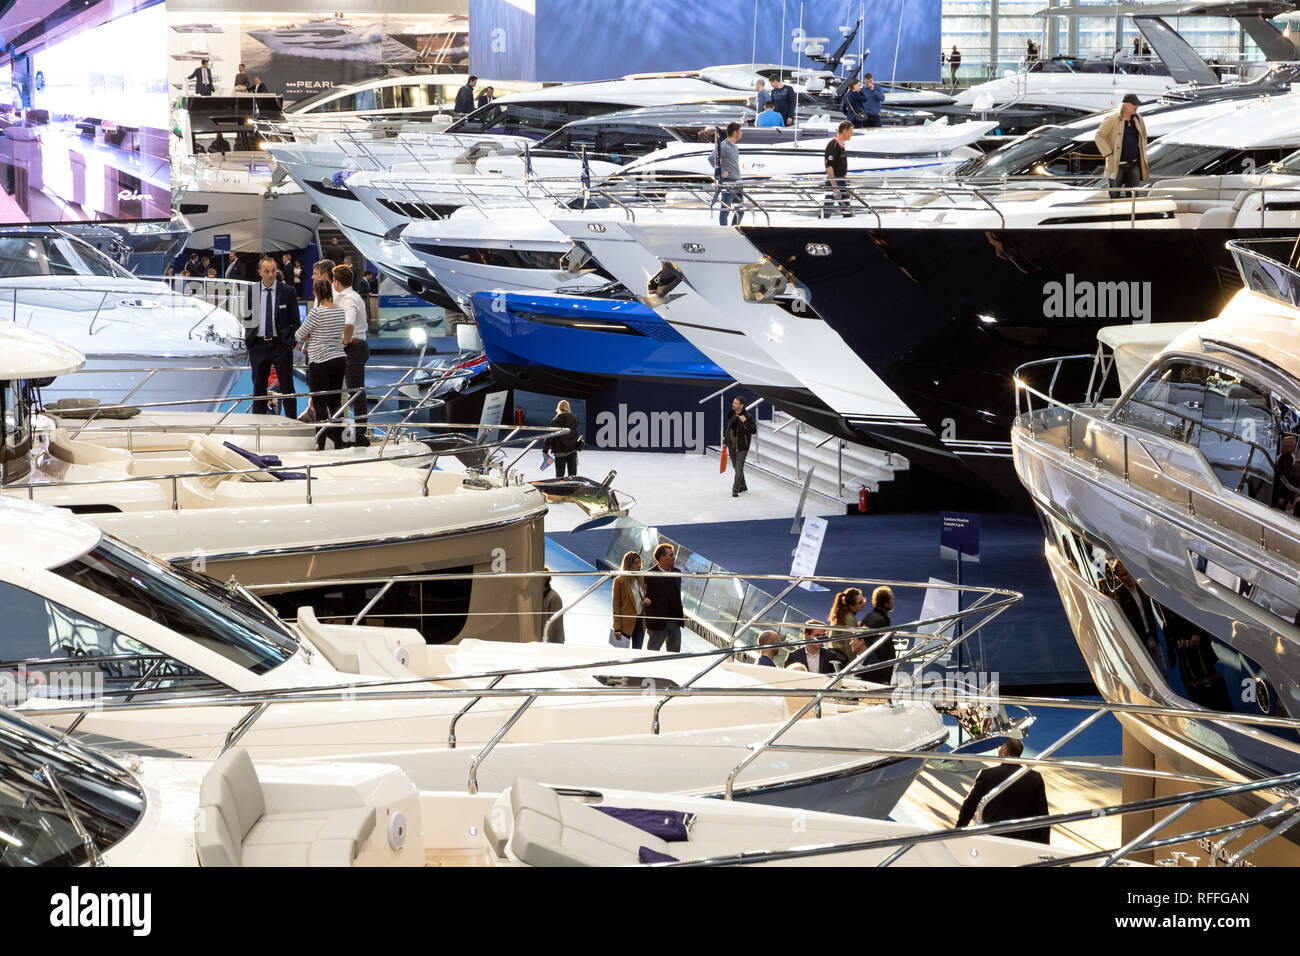 DUSSELDORF, Germania - 21 GEN 2019: i visitatori la visualizzazione di vari luxury yachts presentate durante il Boot Dusseldorf International Boat Show 2019. Foto Stock